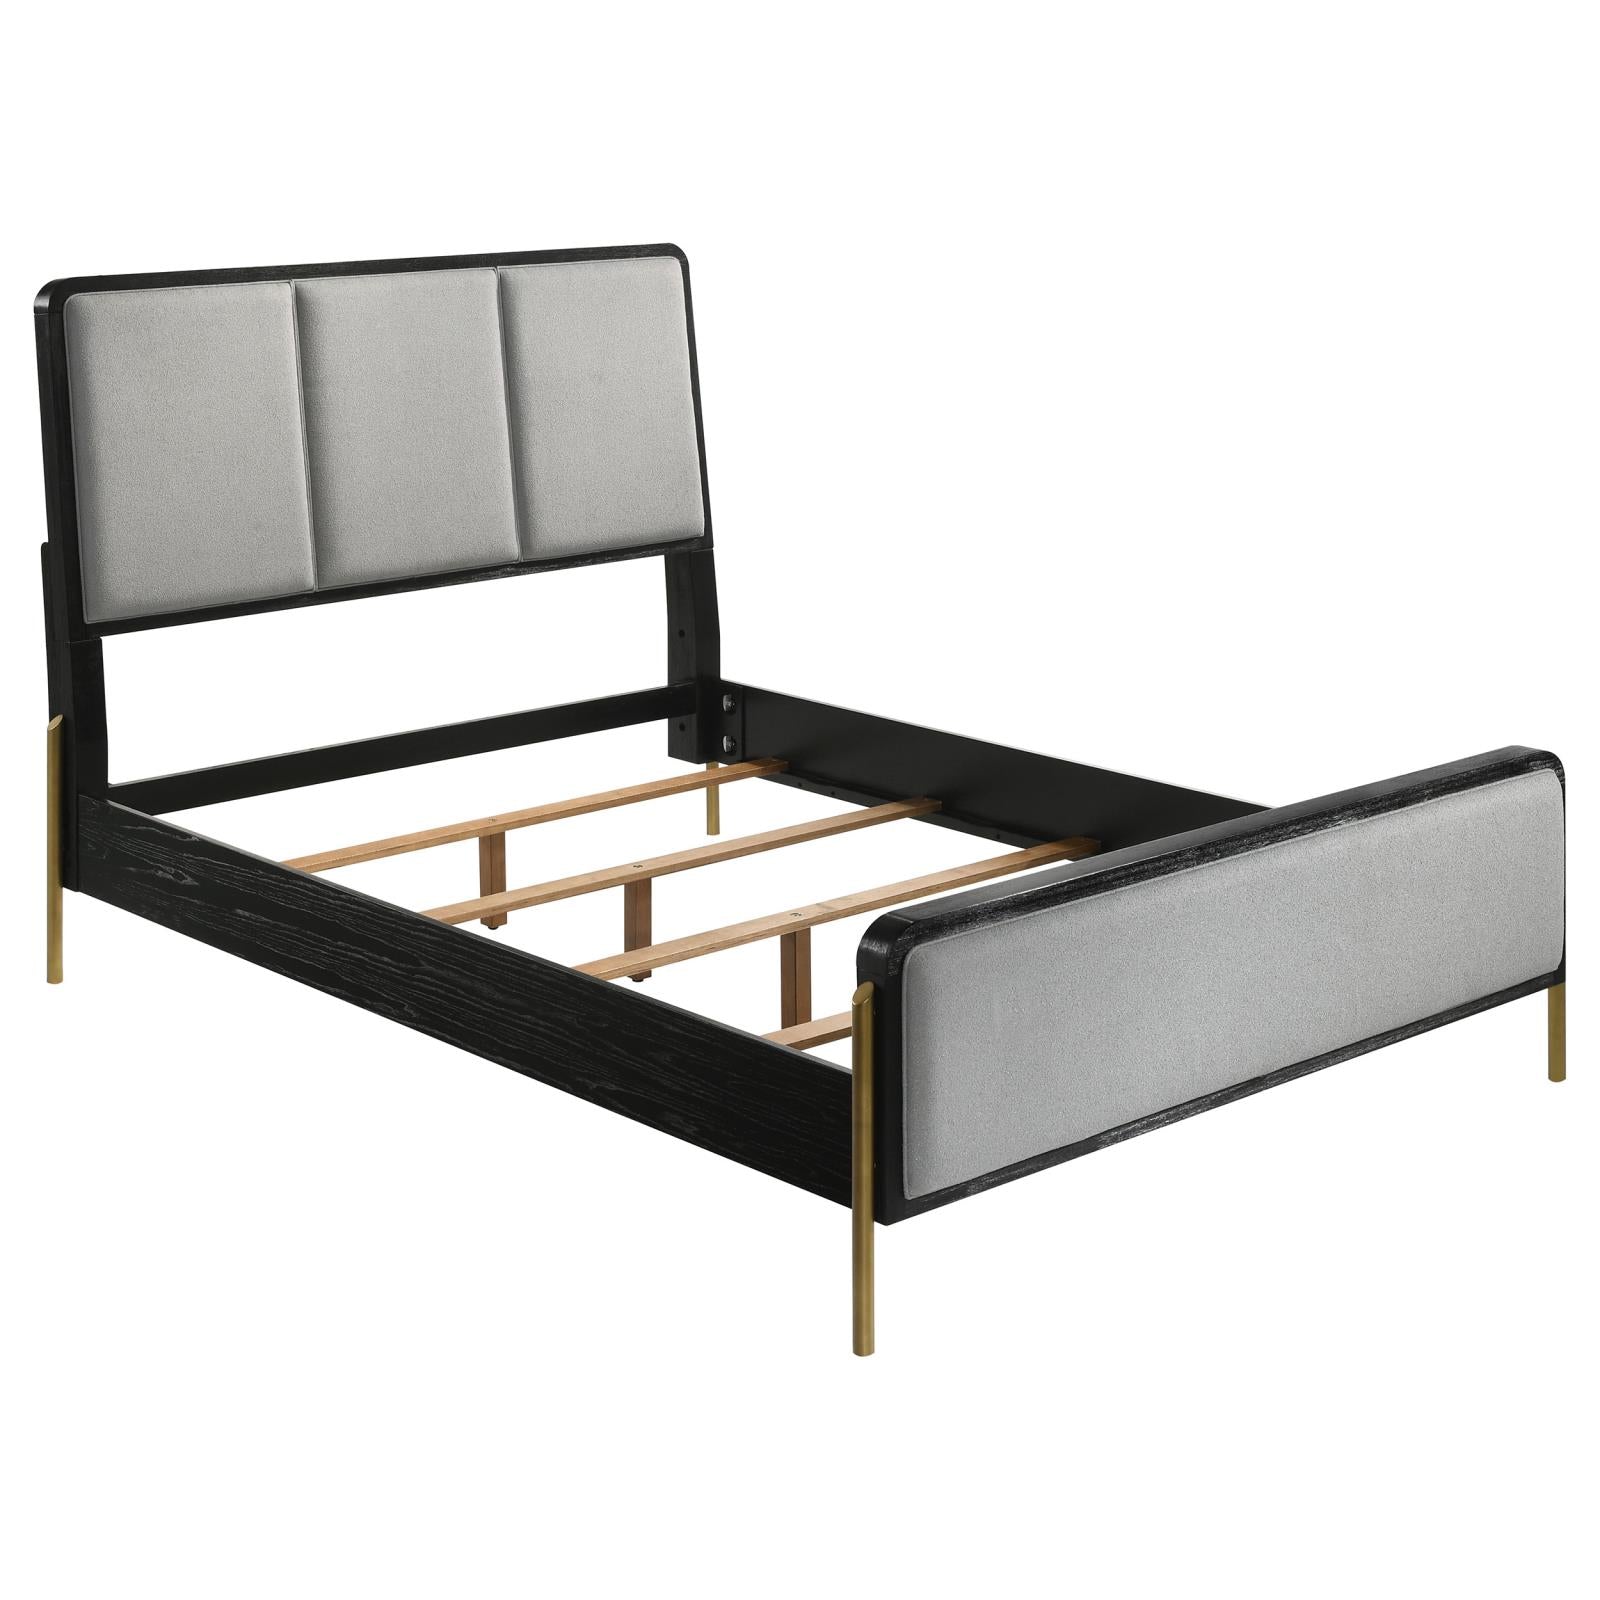 Arini Arini Eastern King Bed With Upholstered Headboard Black And Grey 224331Ke